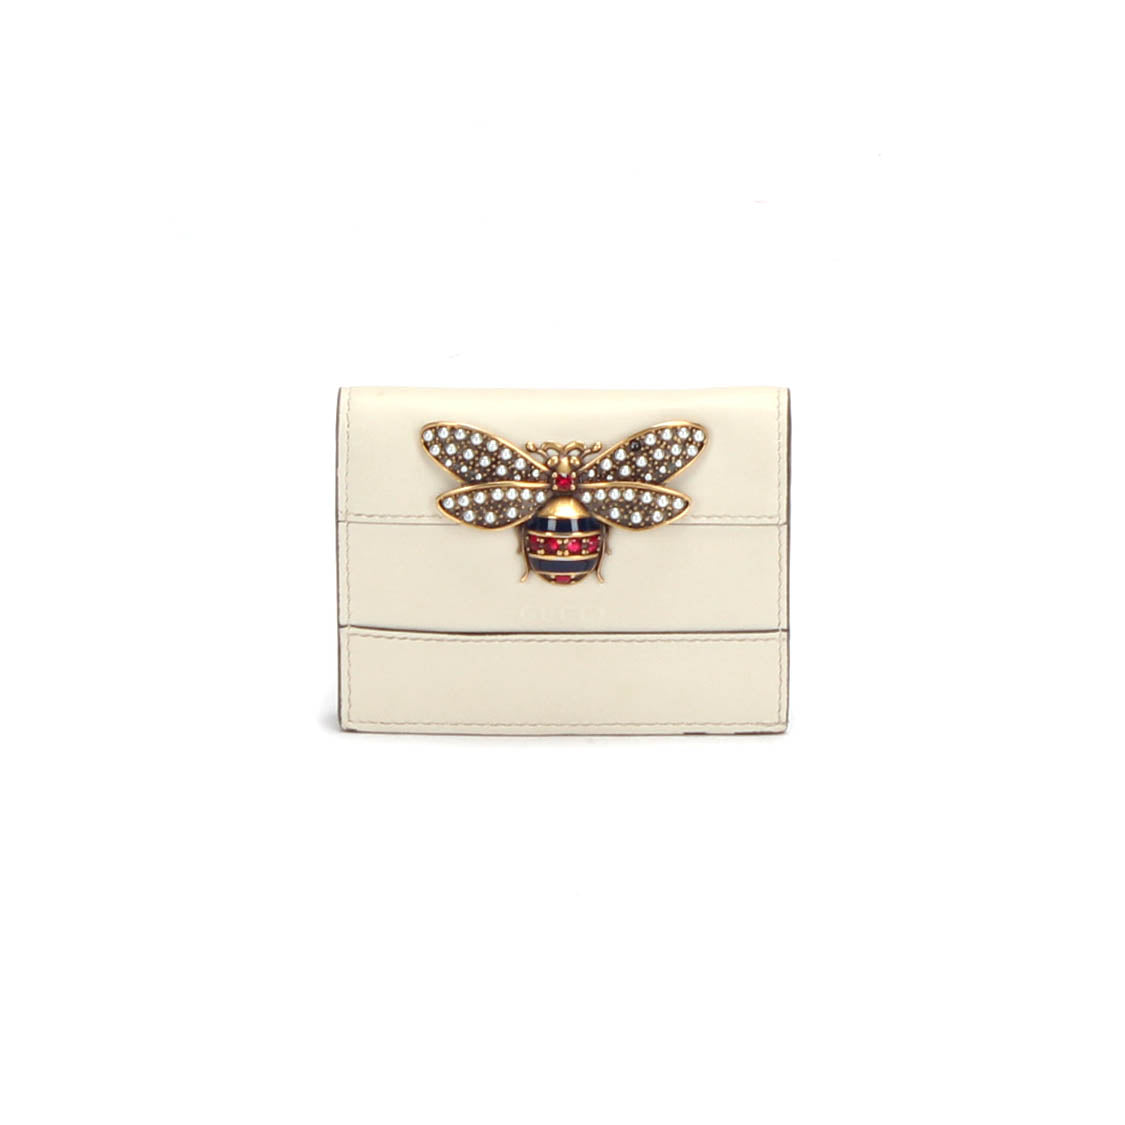 Queen Margaret Leather Compact Wallet